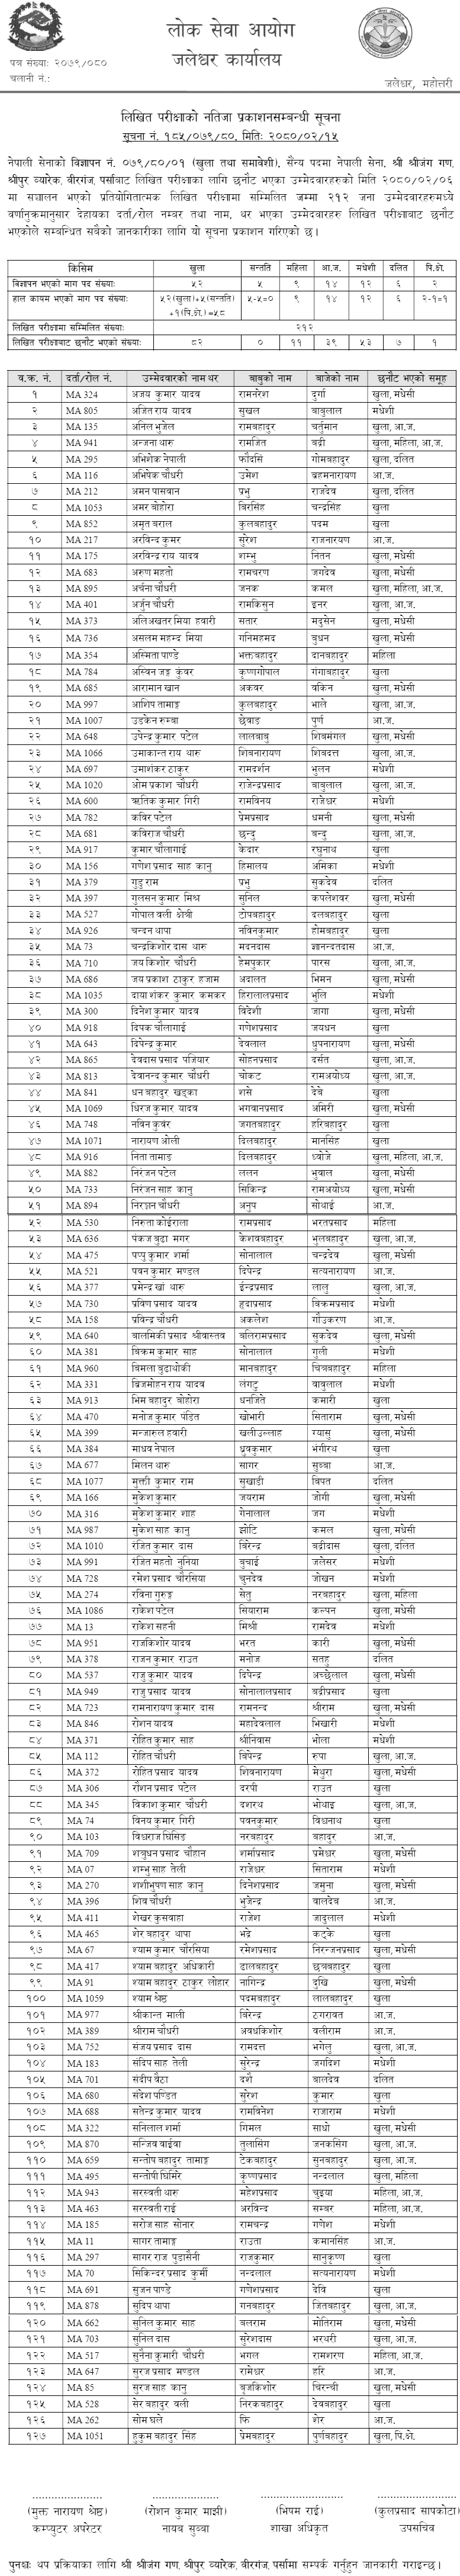 Nepal Army Sainya Written Exam Result 2080 (Birgunj)